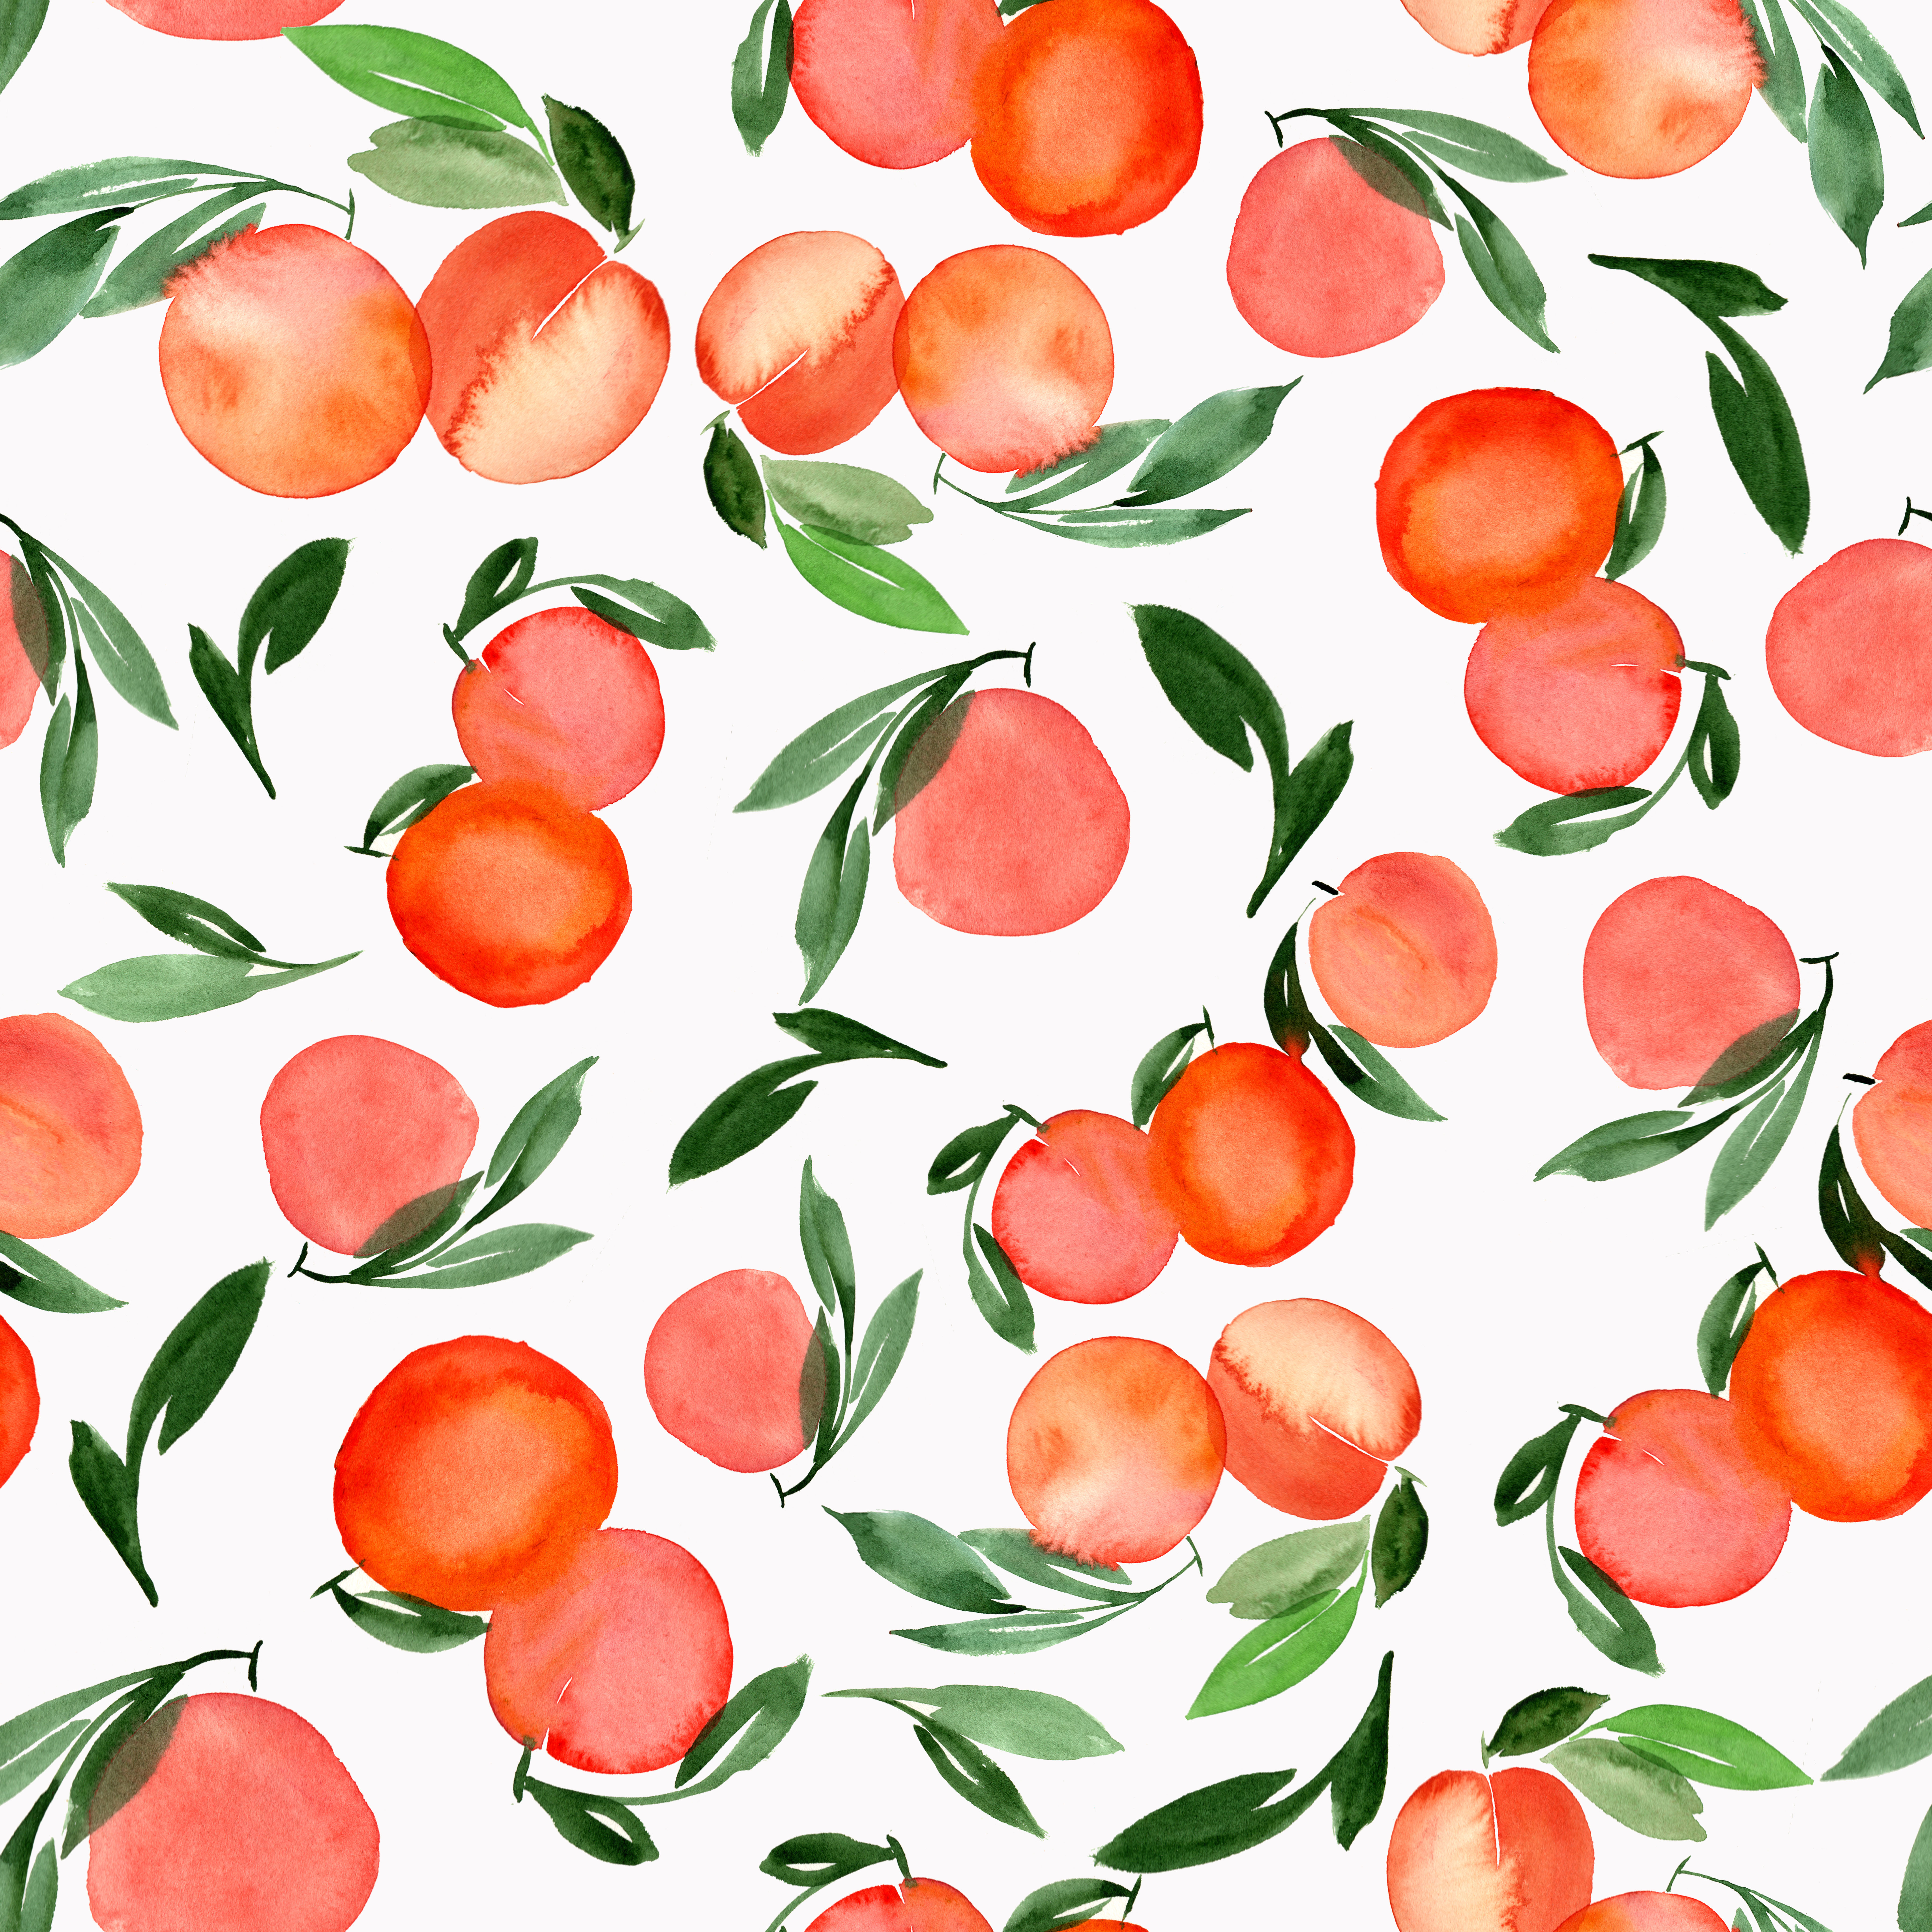 watercolor peach and orange